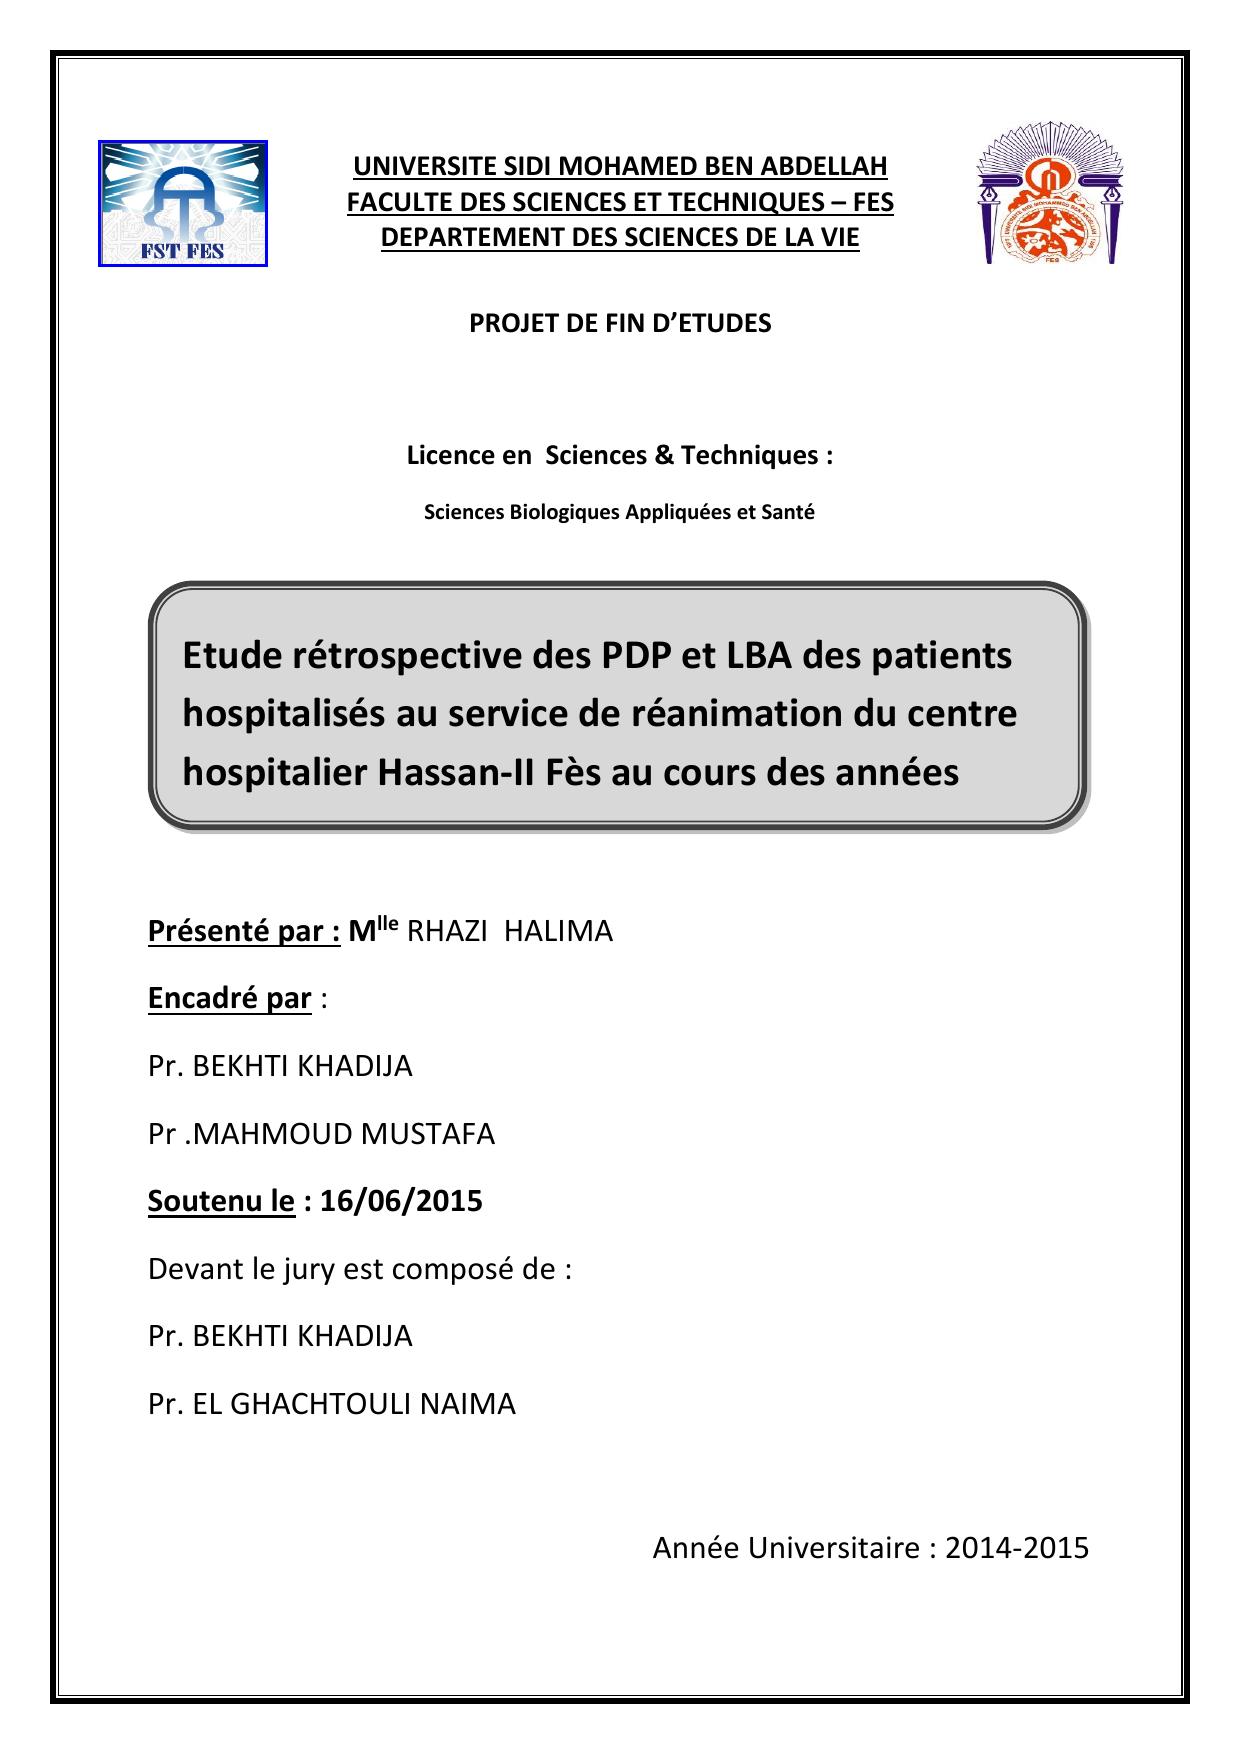 Etude rétrospective des PDP et LBA des patients hospitalisés au service de réanimation du centre hospitalier Hassan-II Fès au cours des années